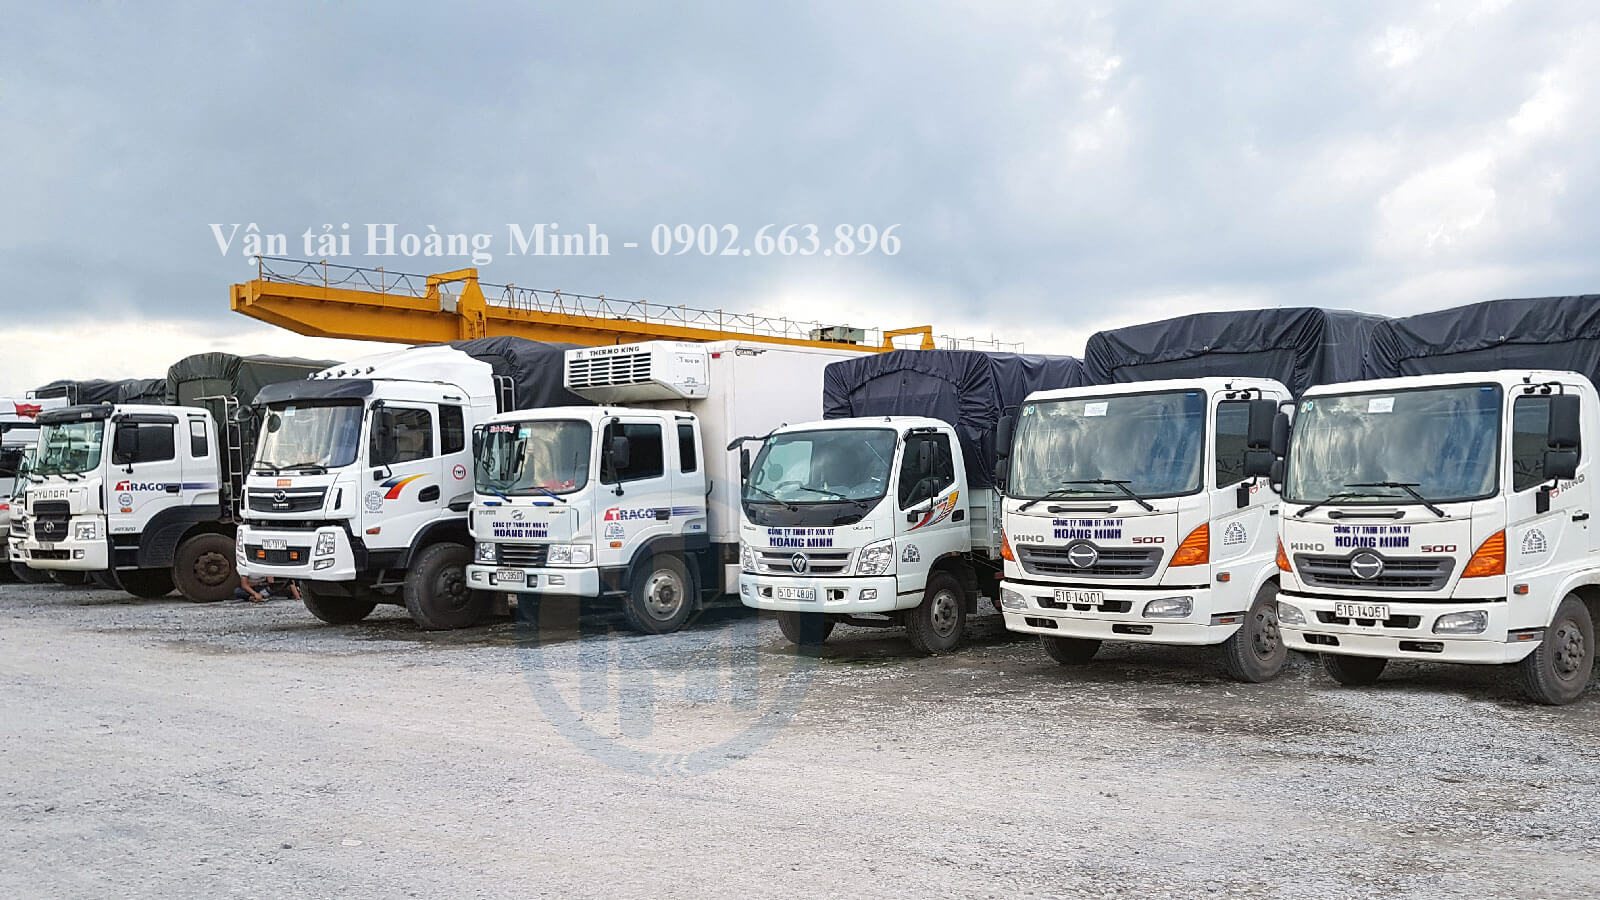 Vận tải Hoàng Minh cho thuê xe tải chở hàng Huyện Nhà Bè